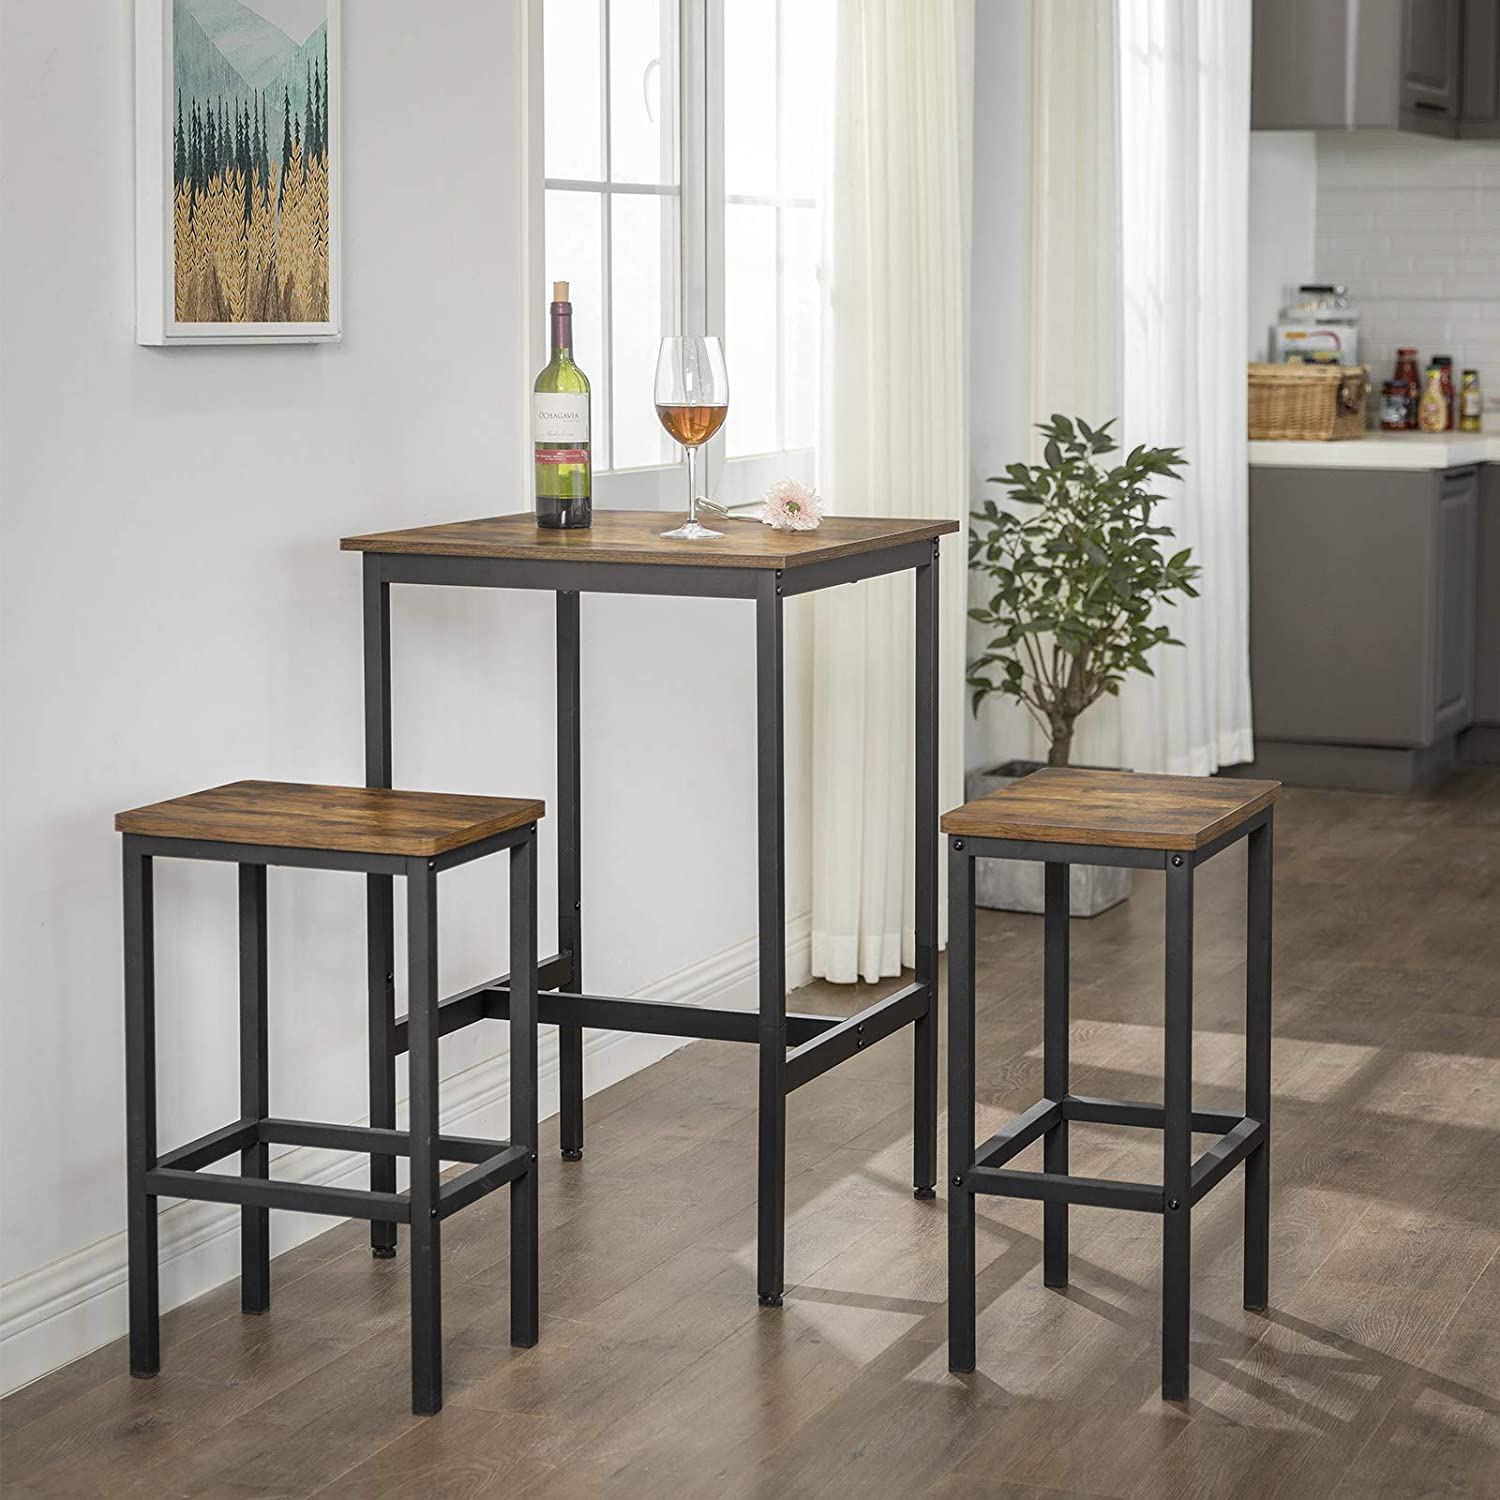 Table de bar en bois de Nancy - Table de cuisine vintage - Tables de bar de cuisine - Bureau haut - Industriel - Bois & Métal - 60 x 60 x 90 cm